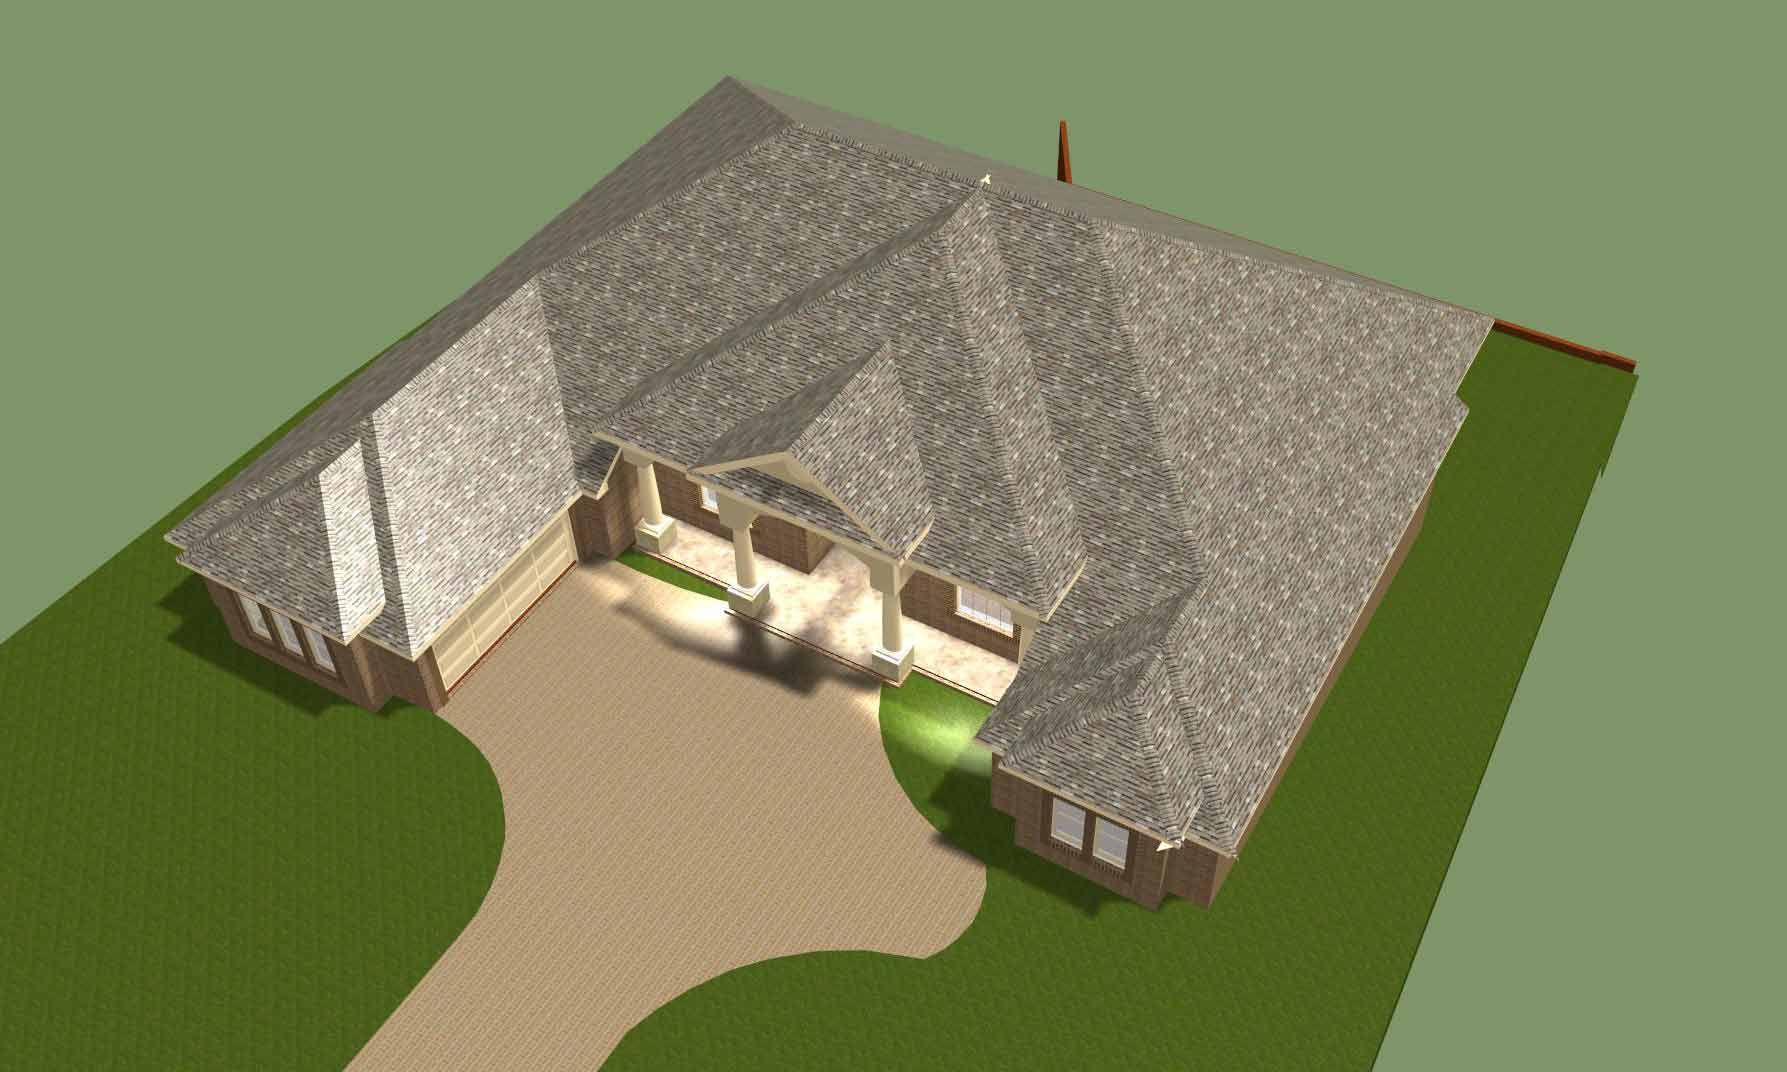 Shear residence model